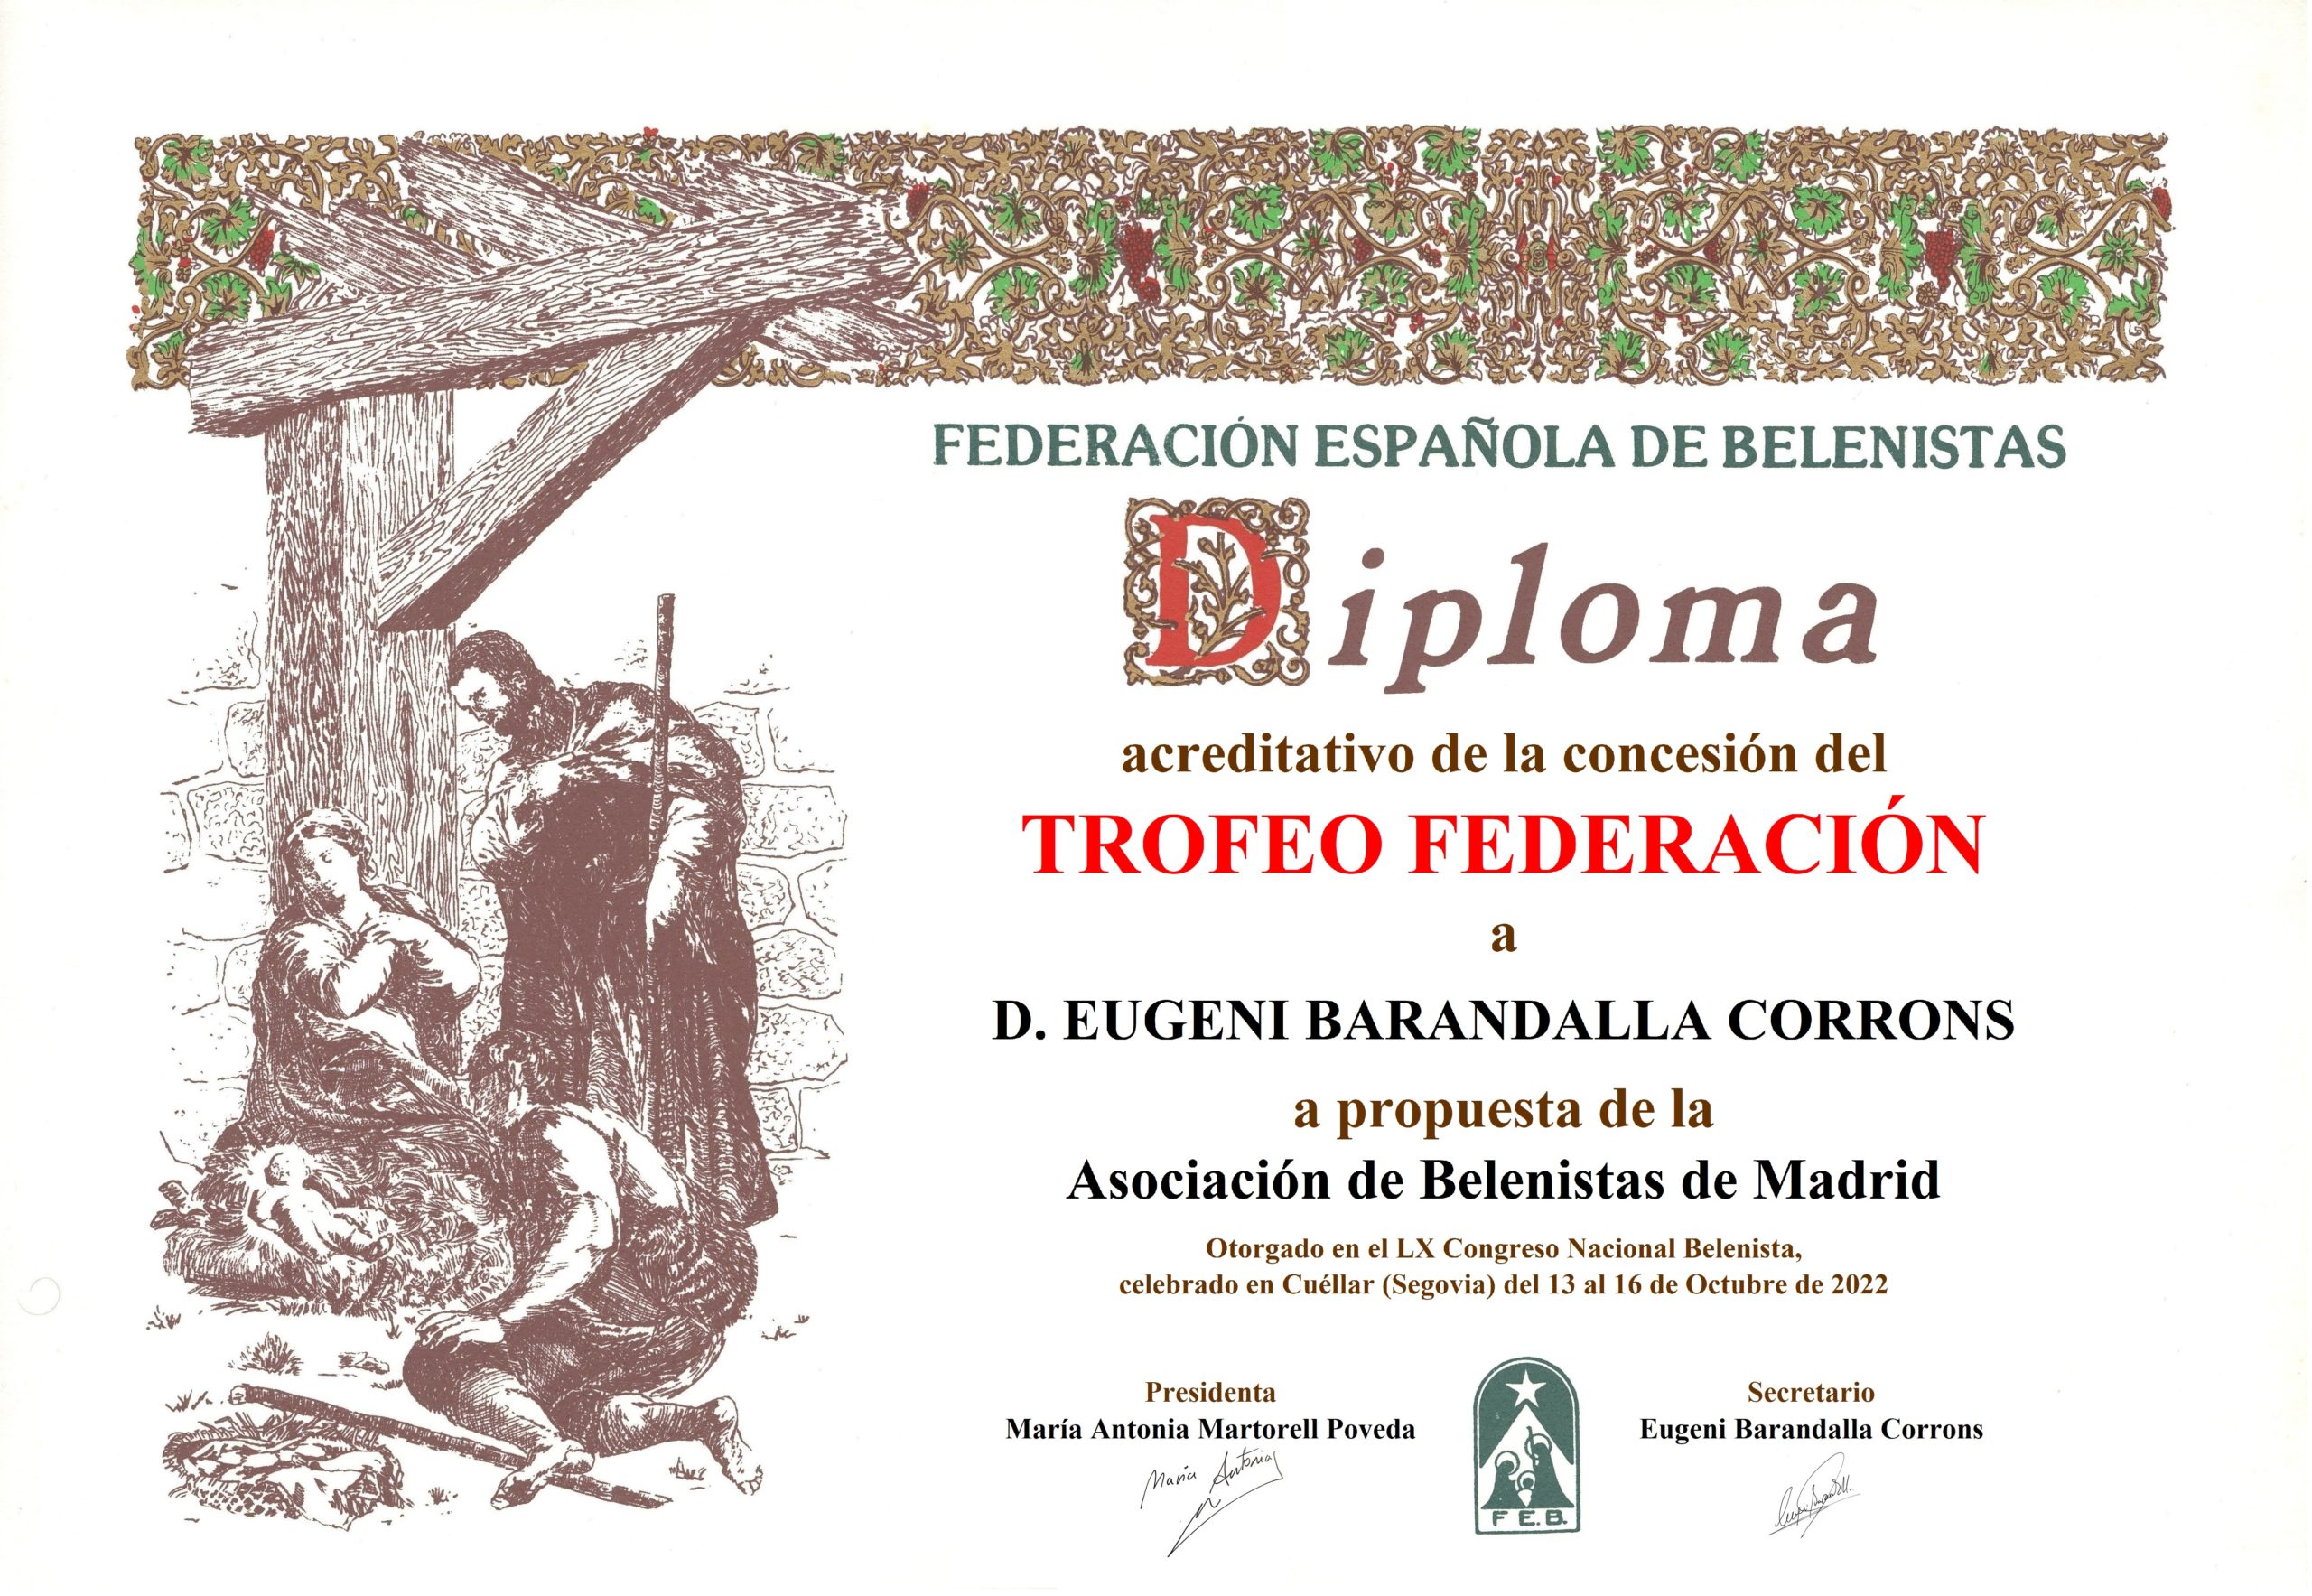 Eugeni Barandalla Corrons - Diploma Trofeo FEB 2022